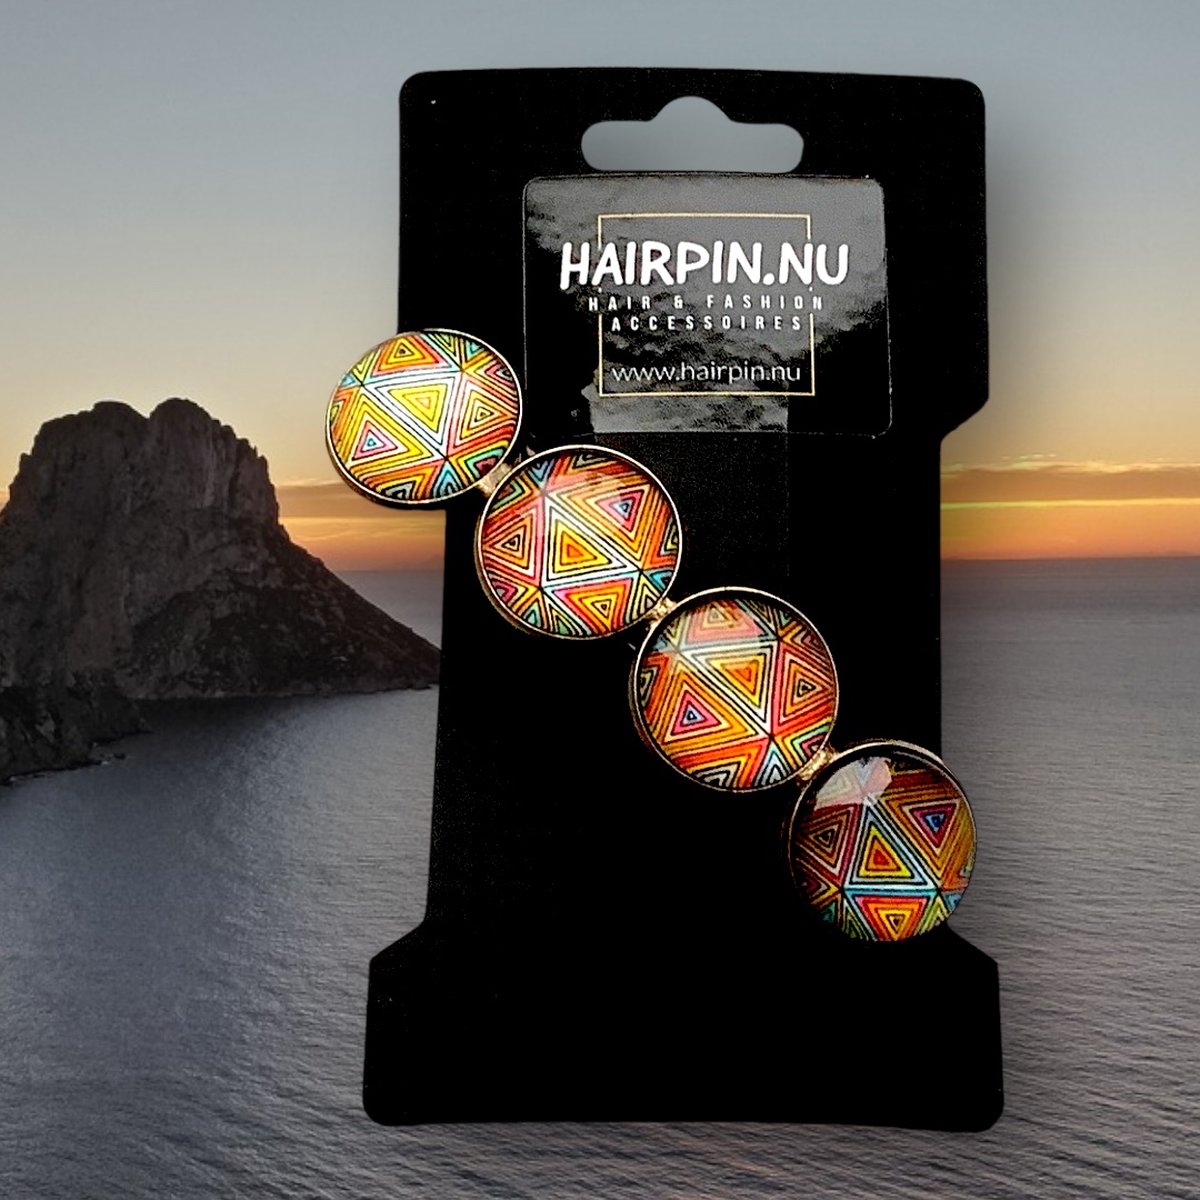 Hairpin.nu-Hairclip-glas cabochon-haarspeld-mandala-bohemian-ibiza-boho-multicolor-print